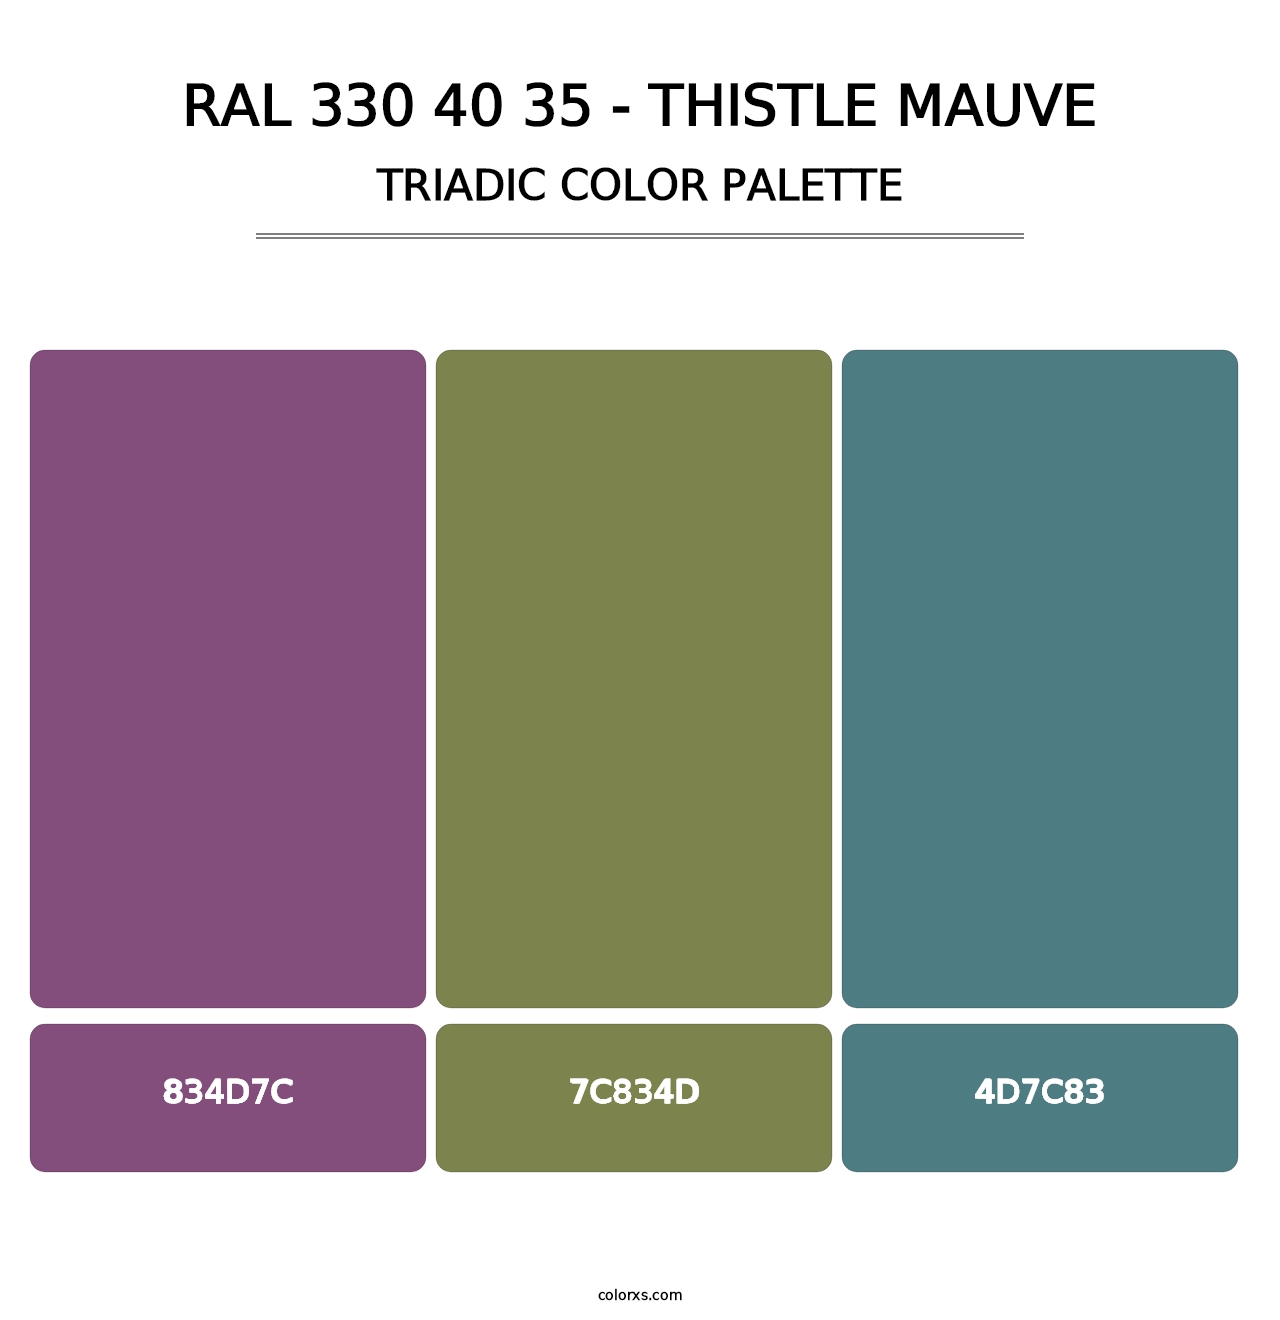 RAL 330 40 35 - Thistle Mauve - Triadic Color Palette